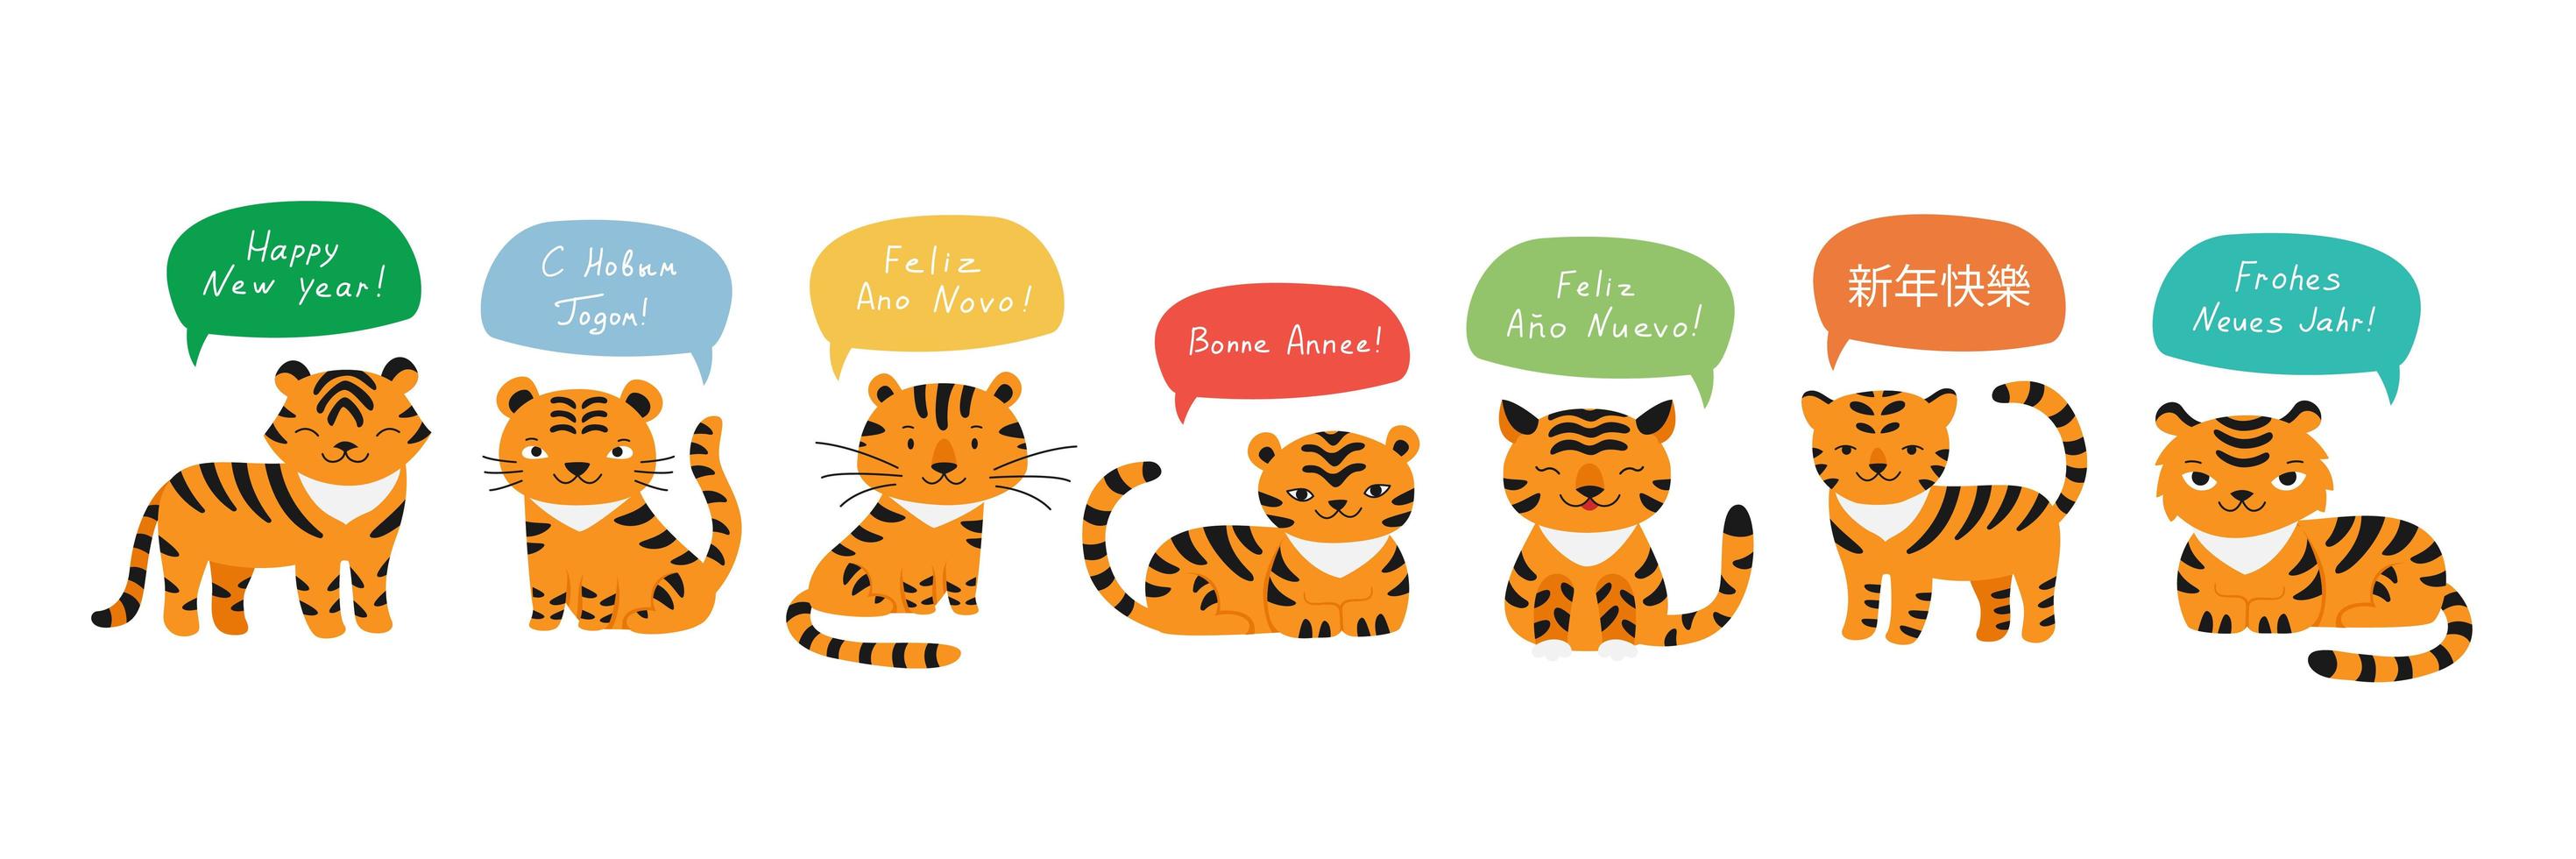 tijgers gelukkig nieuwjaar groeten in verschillende talen vector